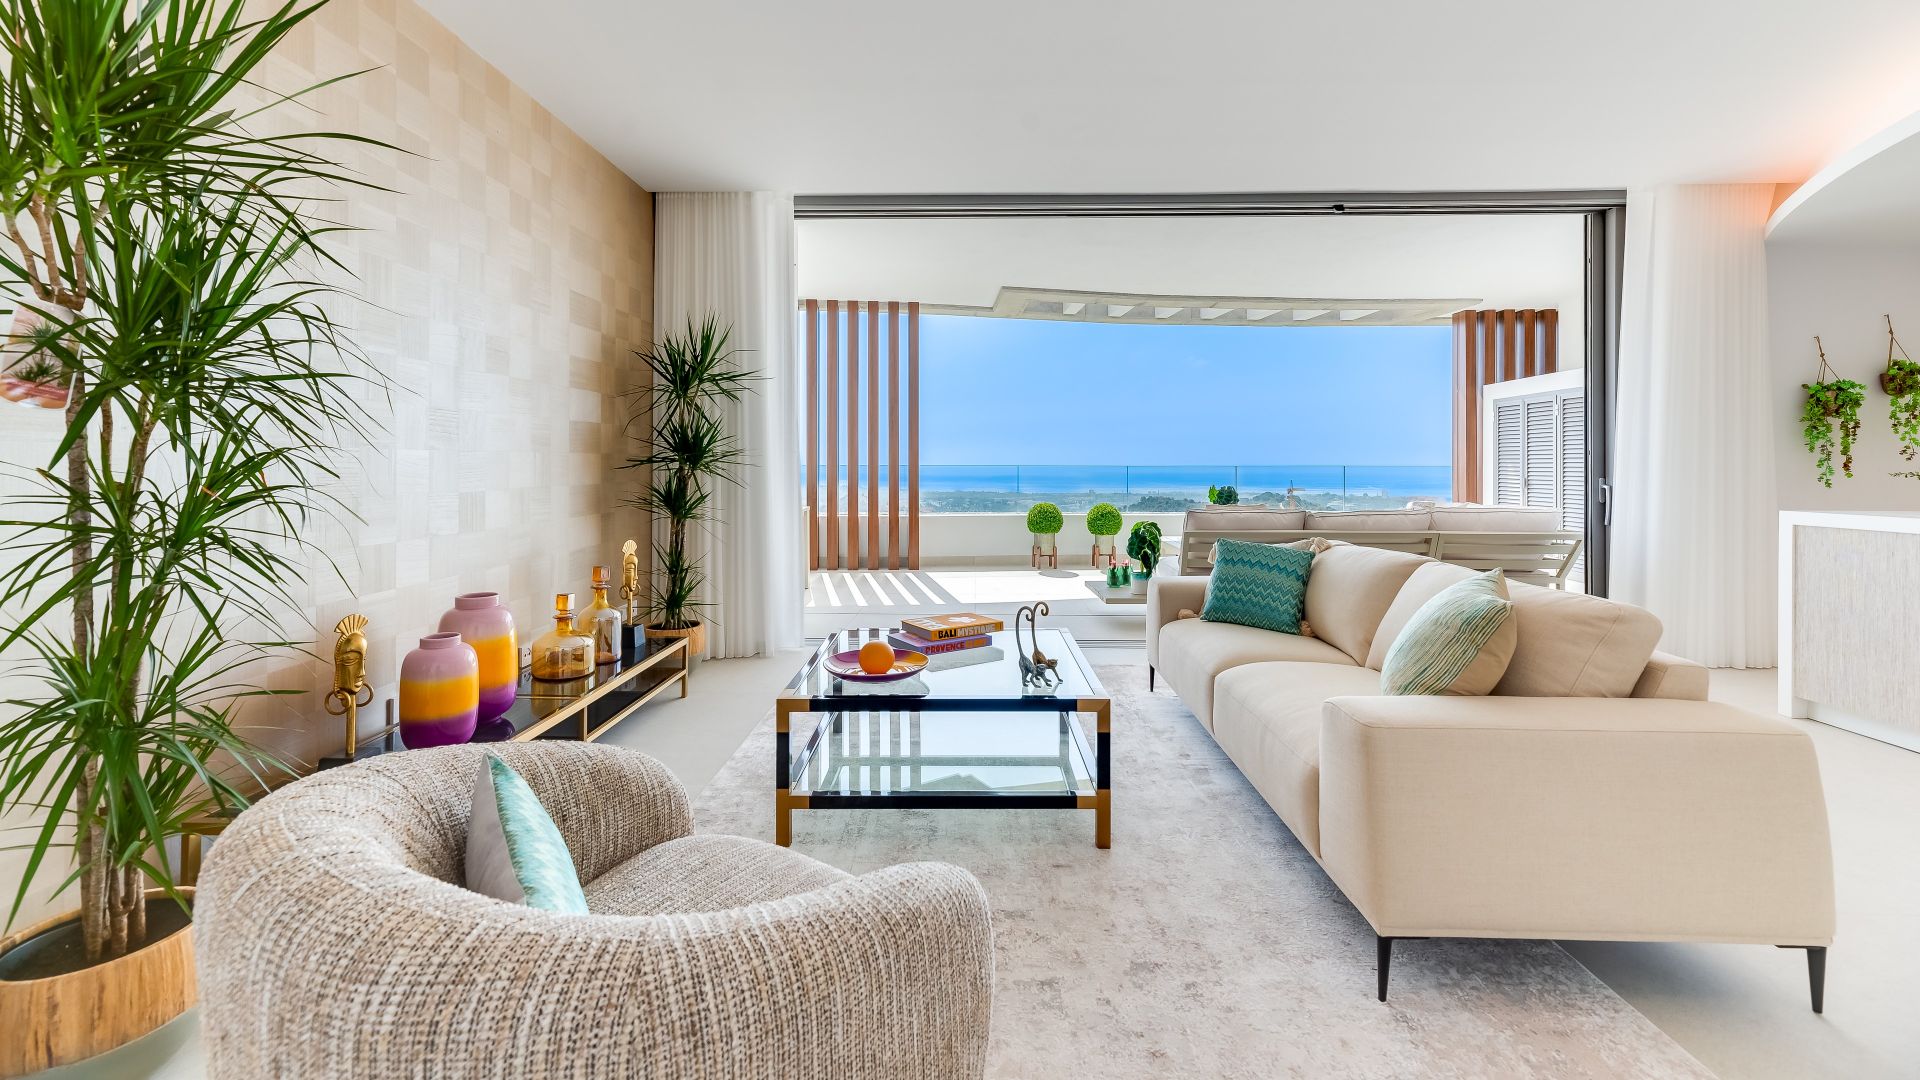 Elegant modern top floor apartment with mesmerizing sea and open views | Engel & Völkers Marbella